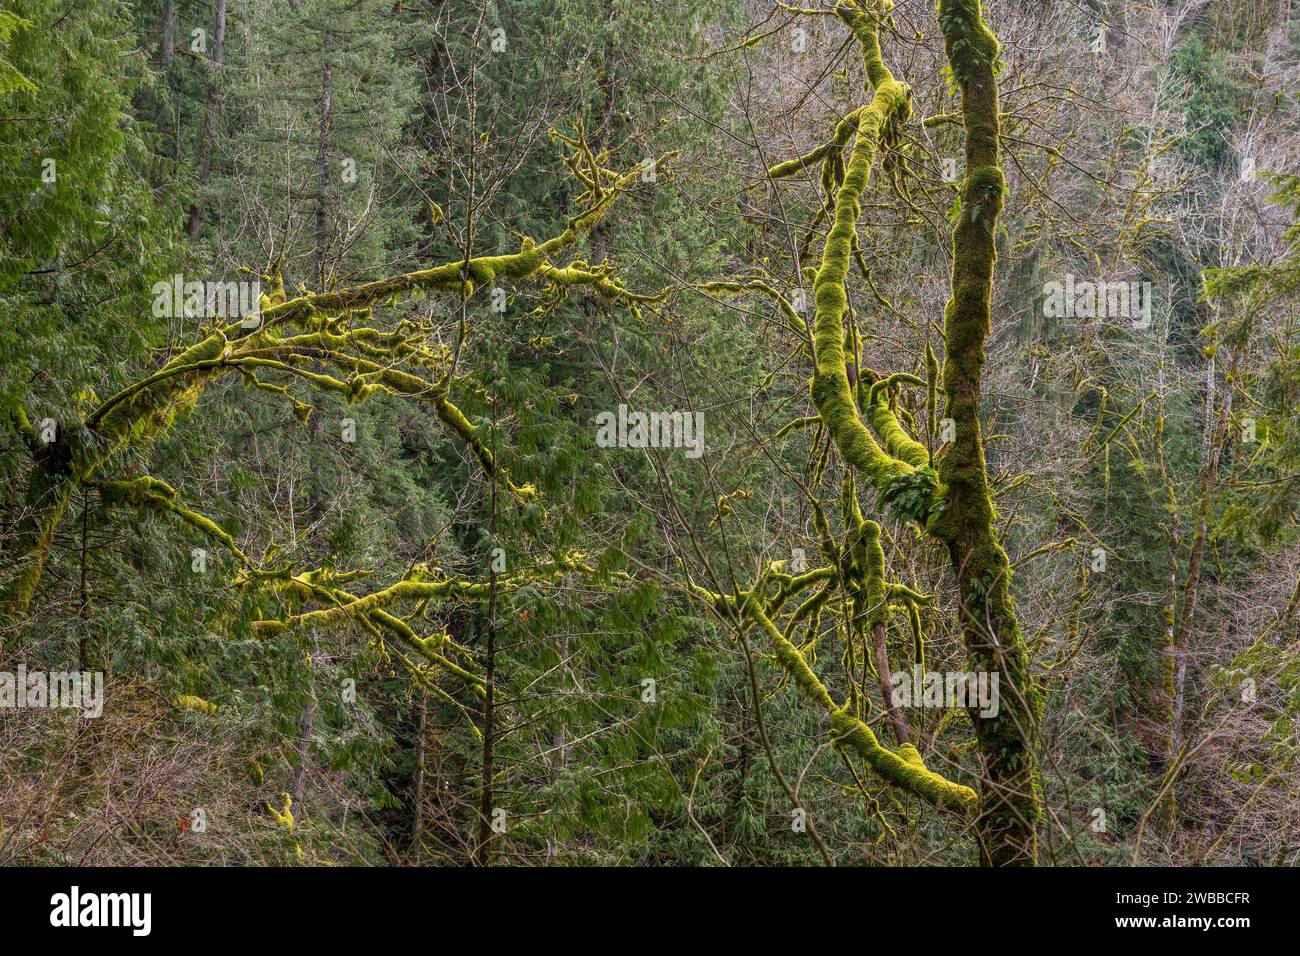 Tronchi ricoperti di muschio lungo il percorso escursionistico Twin Falls nell'Olallie State Park, nella valle del fiume Snoqualmie vicino a North Bend nello stato di Washington, uni Foto Stock